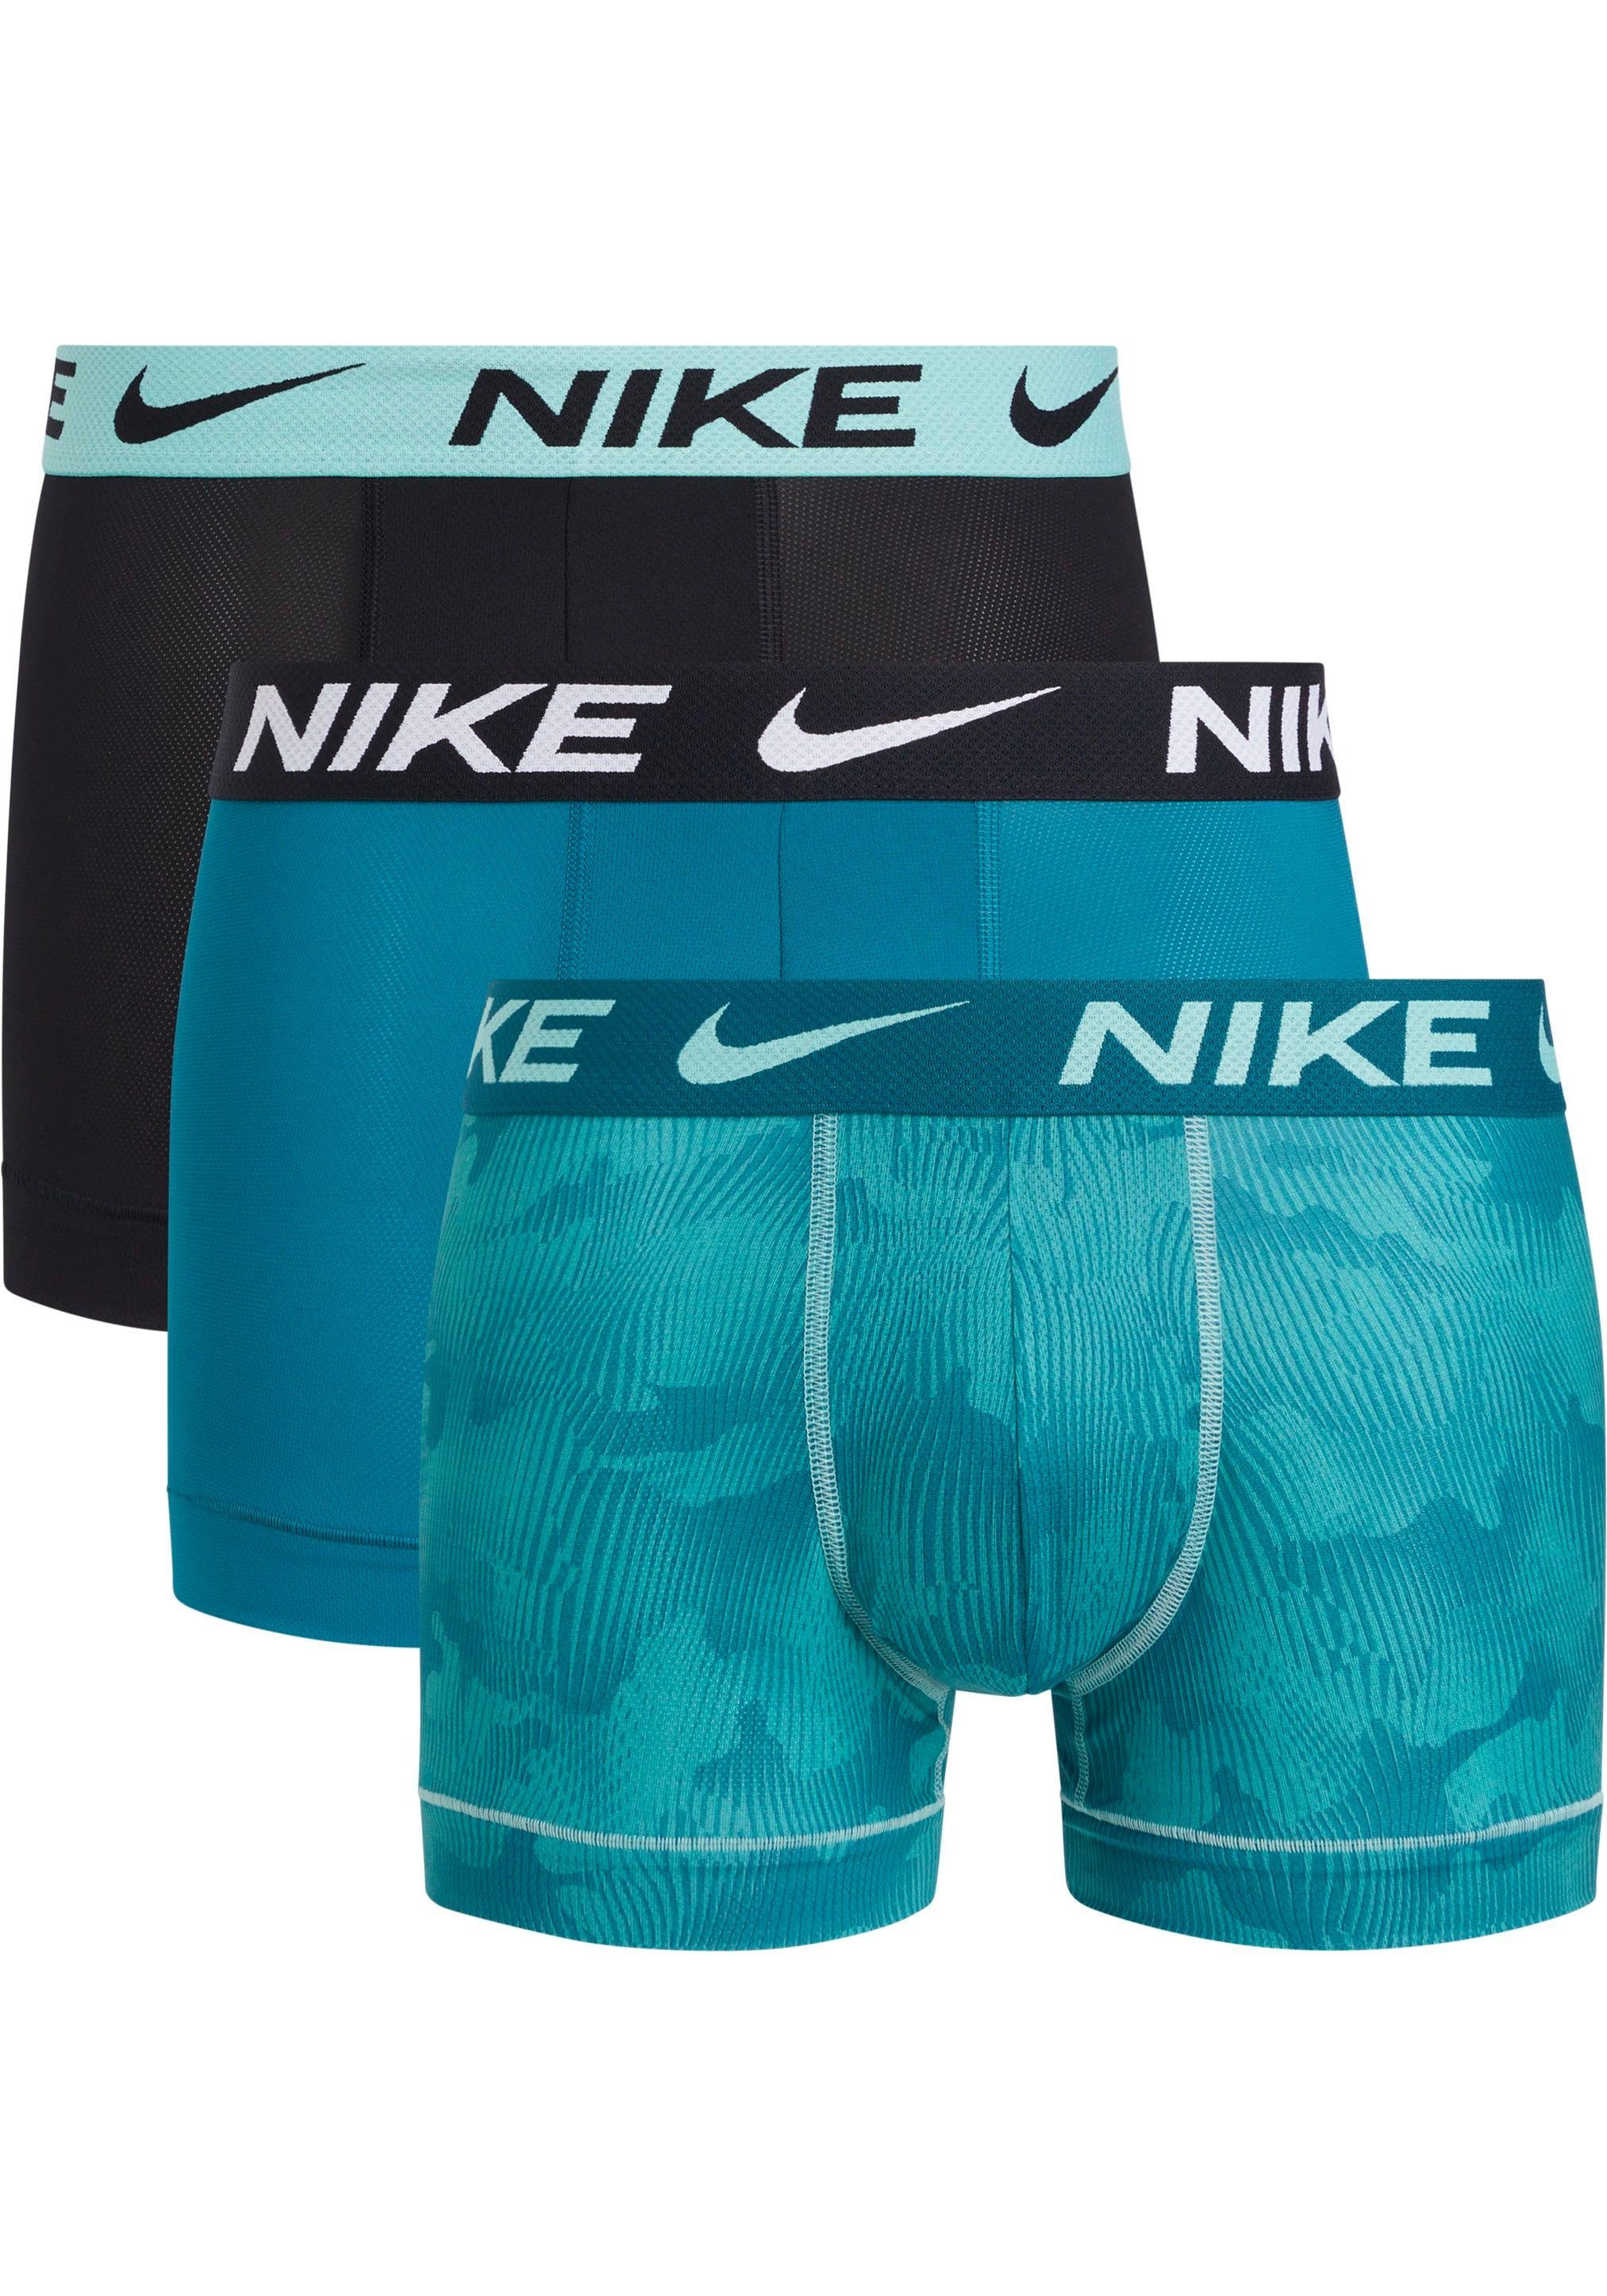 NIKE Underwear Trunk TRUNK 3PK (Packung, 3er-Pack) mit NIKE Logo-Elastikbund (3 Stück) tuerkisblauschwarz